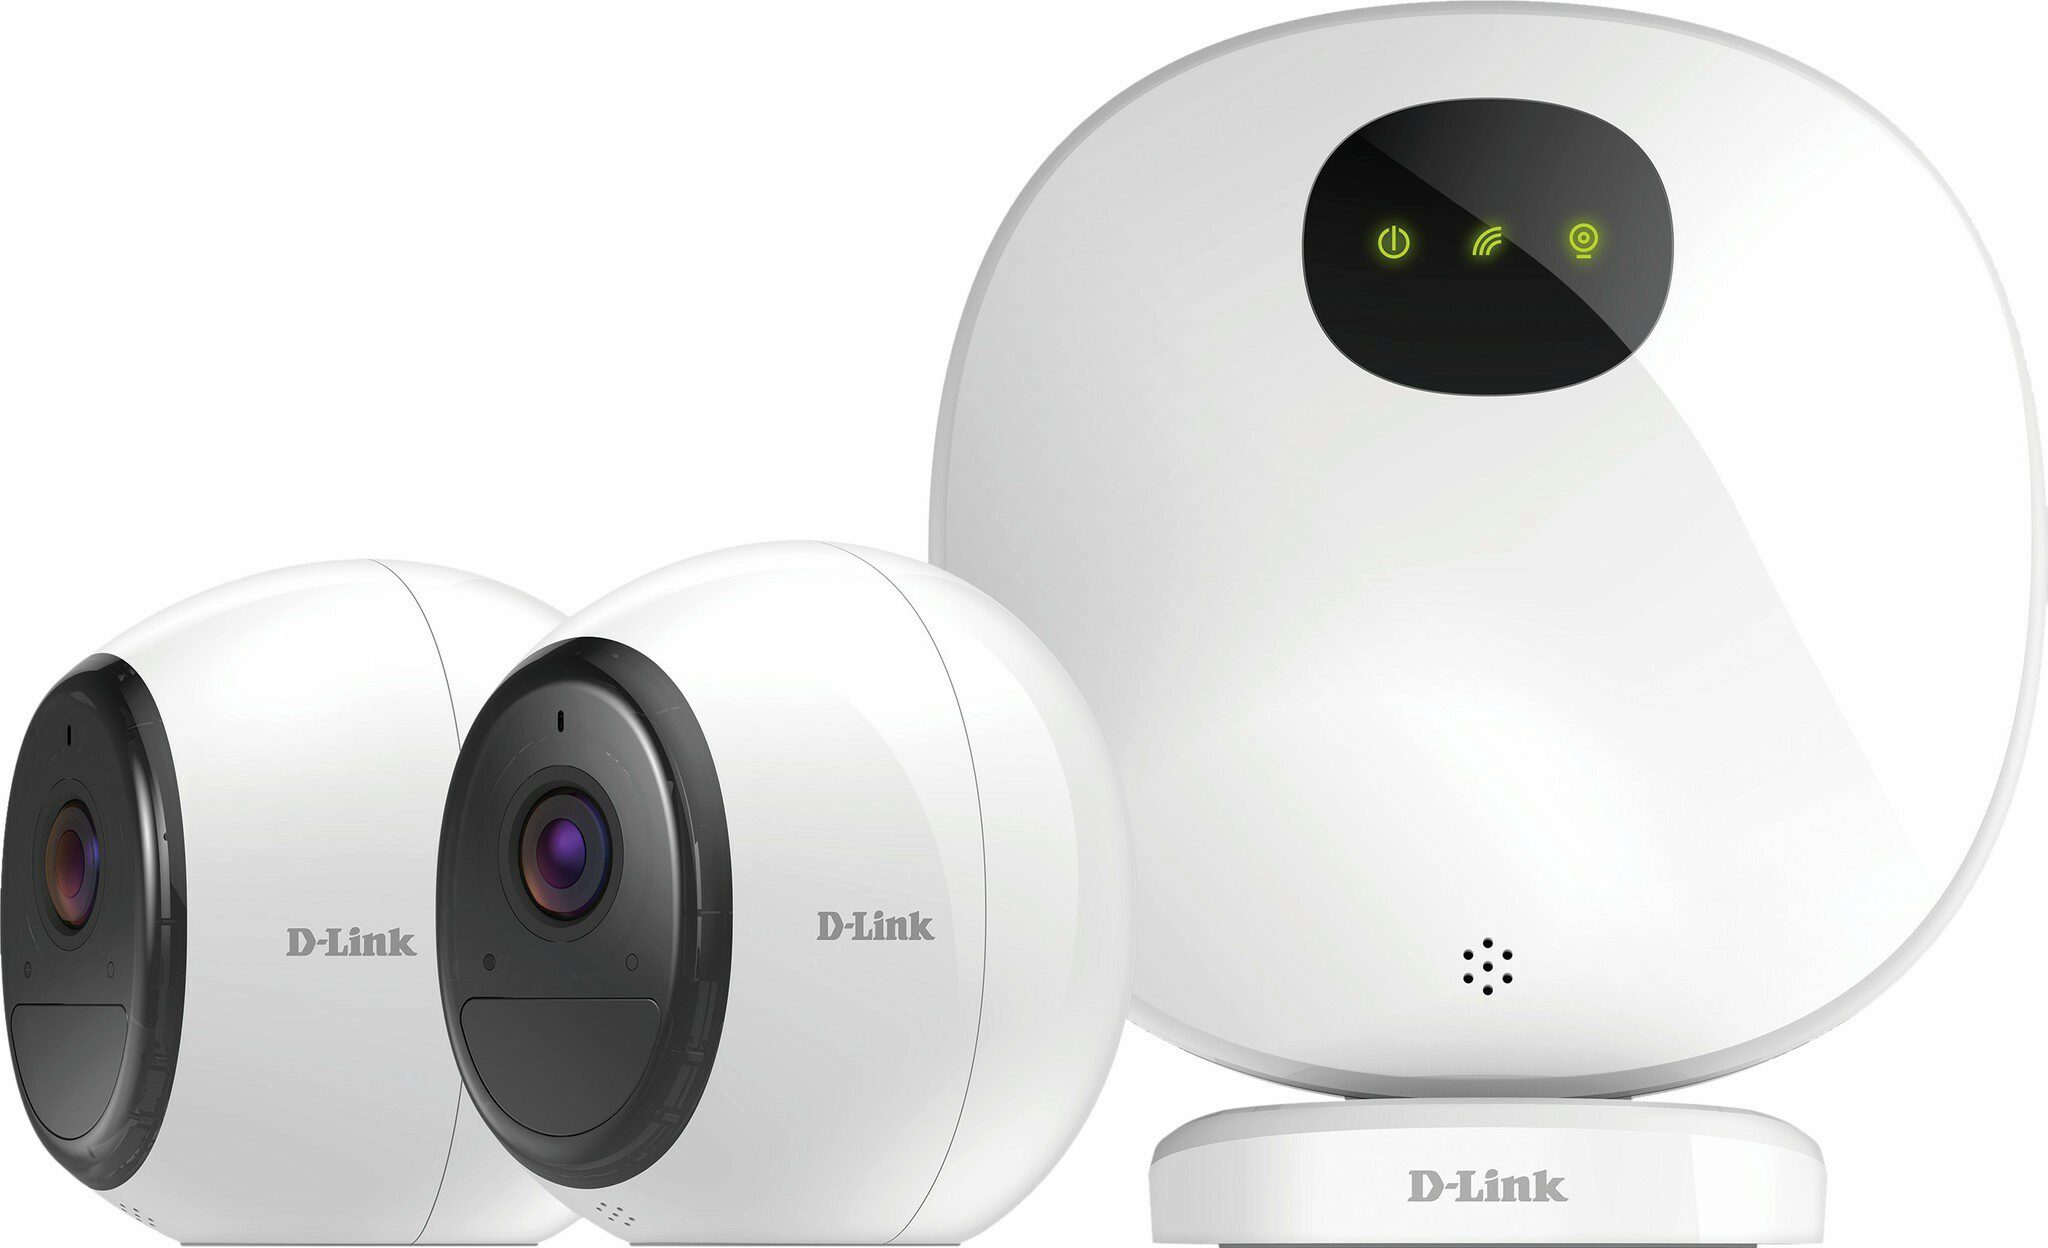 Blink XT Vs Arlo Pro – Welke Slimme Beveiligingscamera Is Het Beste?